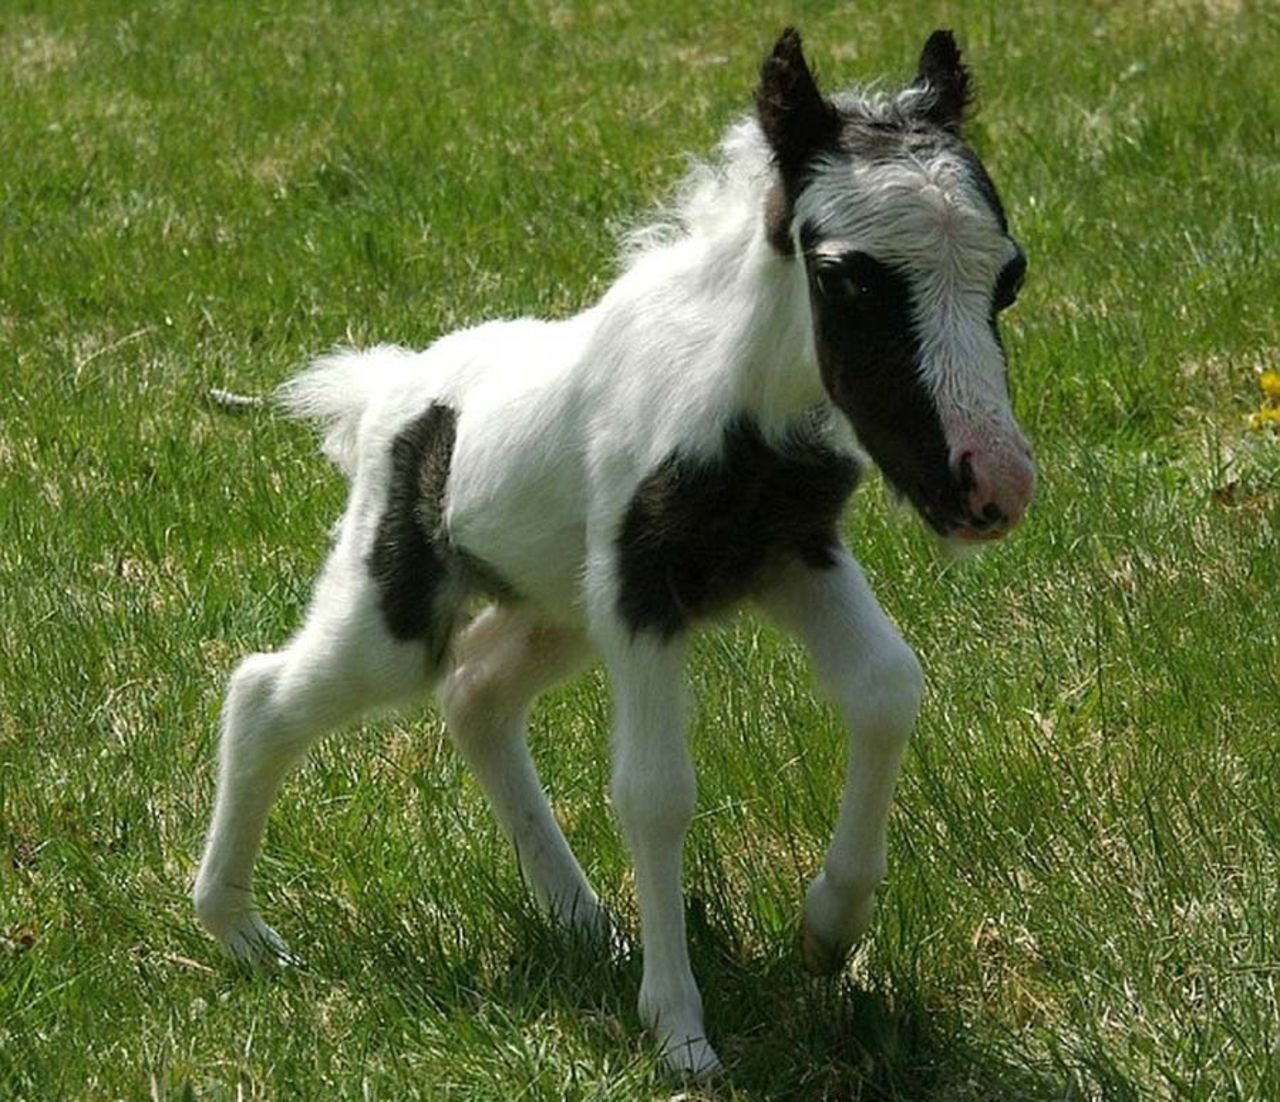 Наименьшая лошадь в мире. Жеребенок Фалабелла. Самая маленькая лошадь Эйнштейн. Литтл Пампкин самая маленькая лошадь в мире. Карликовый пони жеребенок.